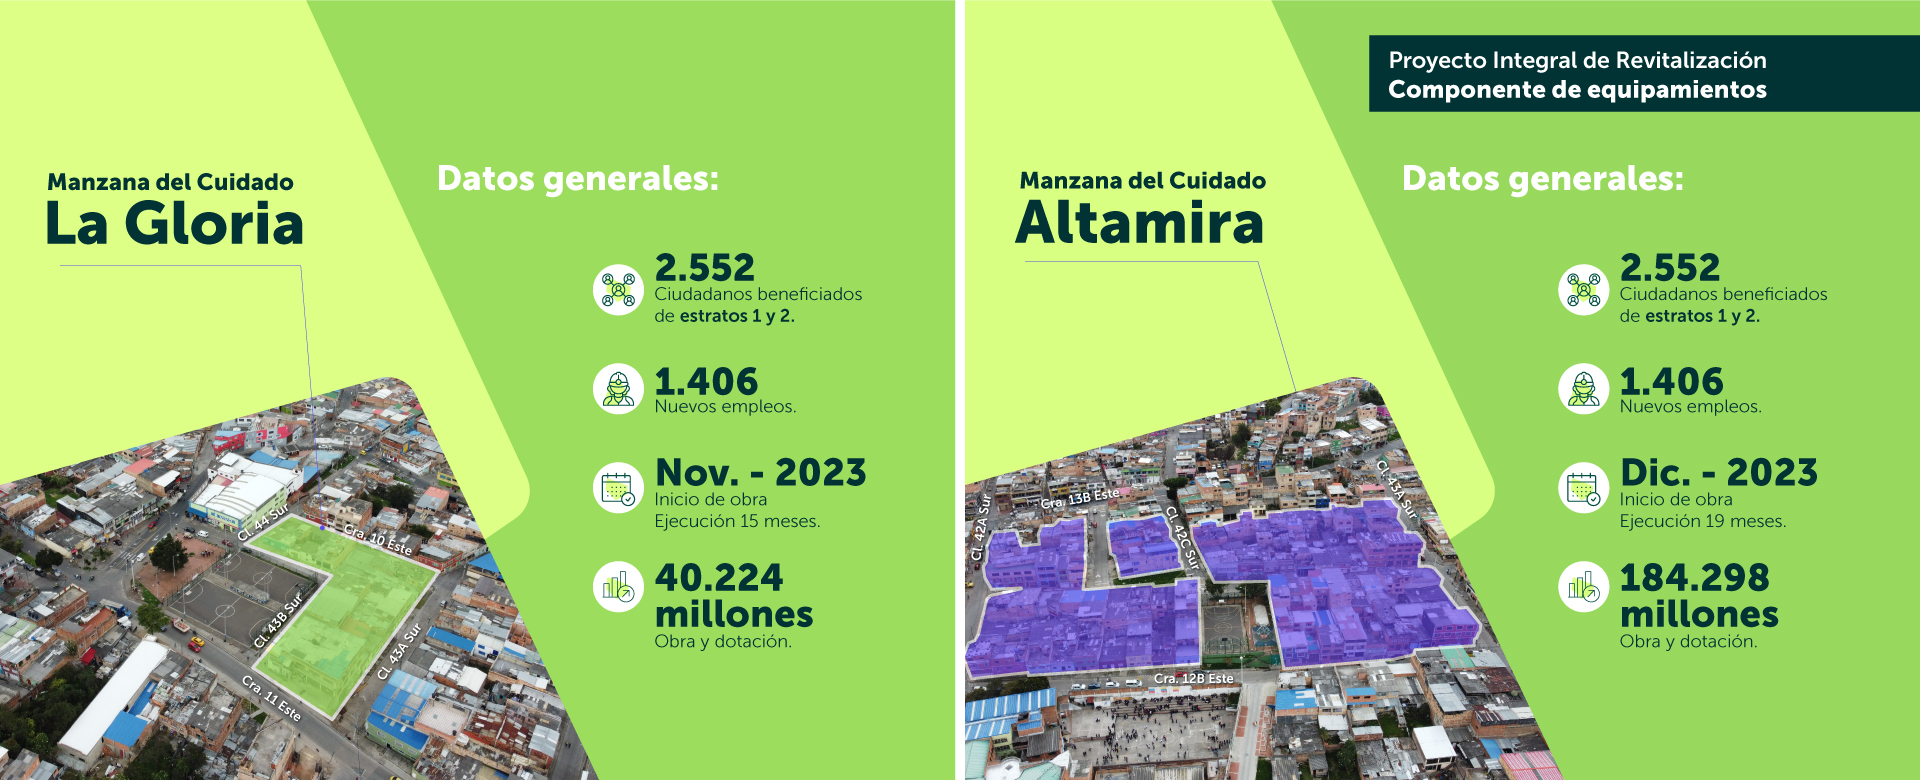 Empresa de Renovación y Desarrollo Urbano de Bogotá revitalizará zonas de San Cristóbal con las Manzanas del Cuidado La Gloria y Altamira